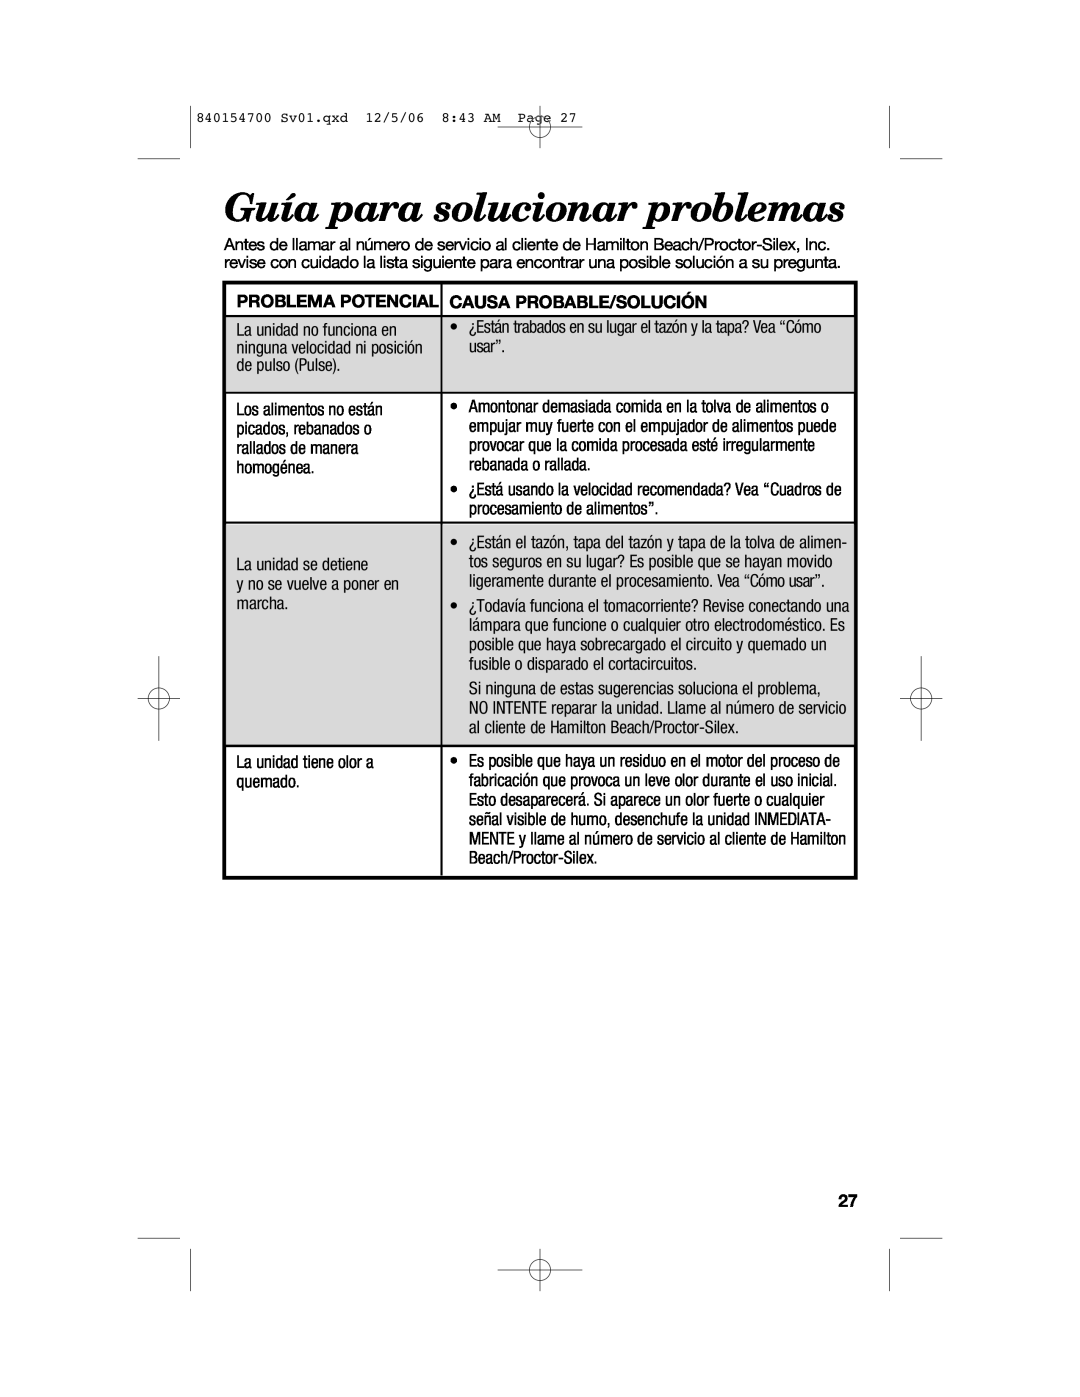 Hamilton Beach 70610C manual Guía para solucionar problemas, Problema Potencial Causa Probable/Solución 